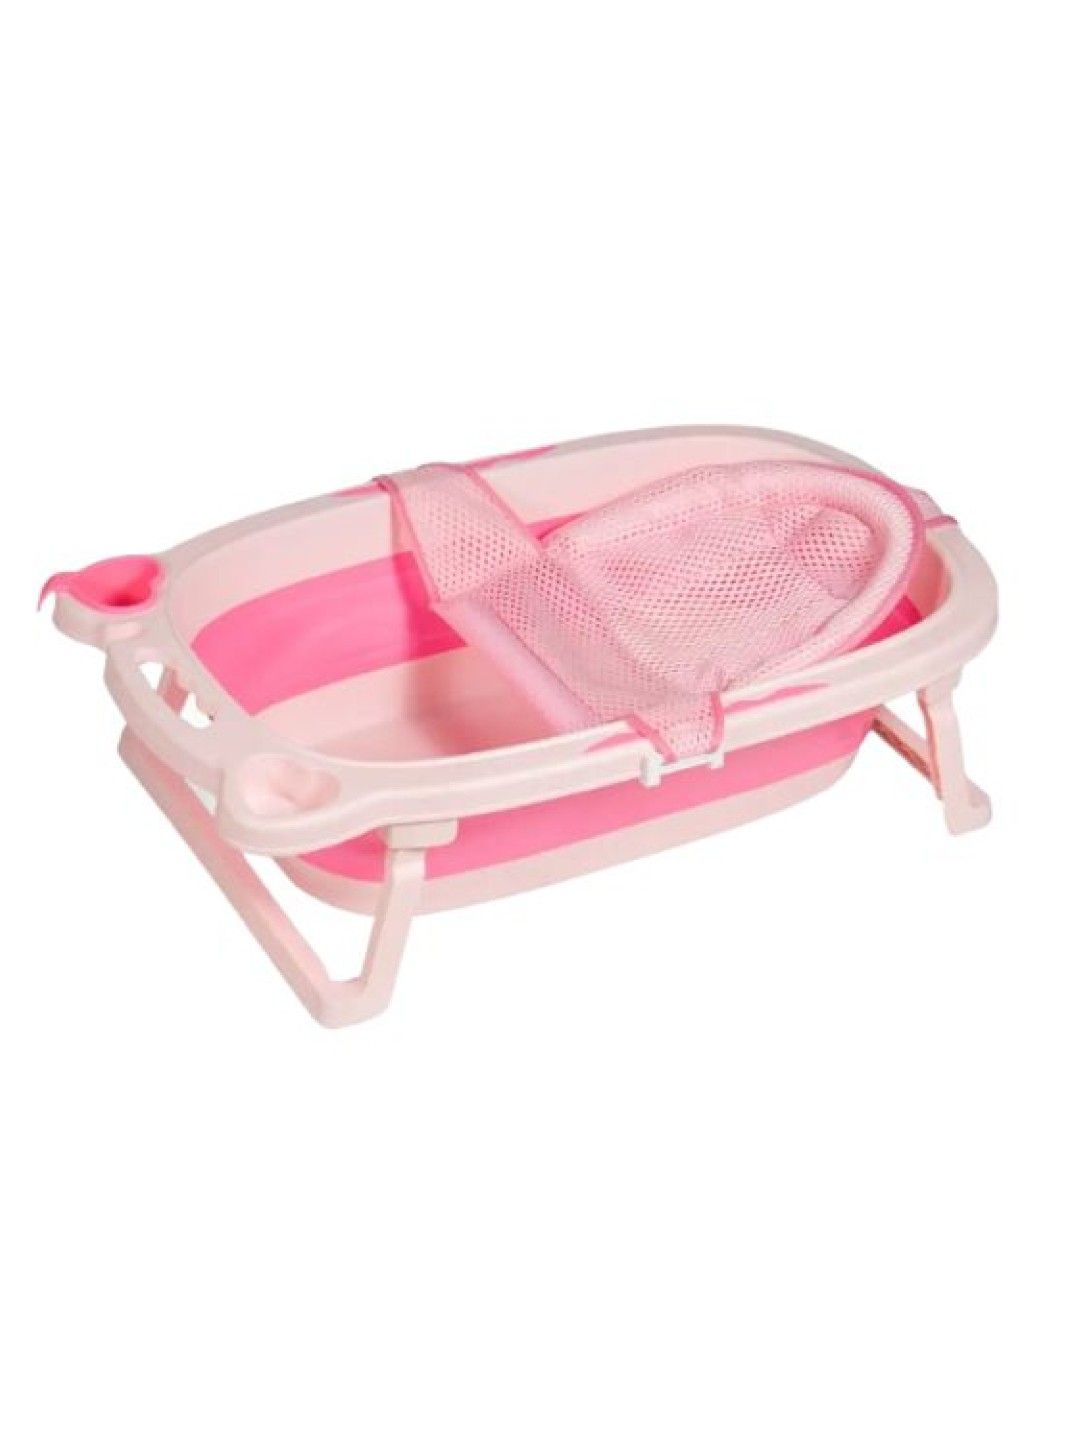 Juju Nursery Collapsible Baby to Toddler Bath Tub Set (Pink) (Pink- Image 2)